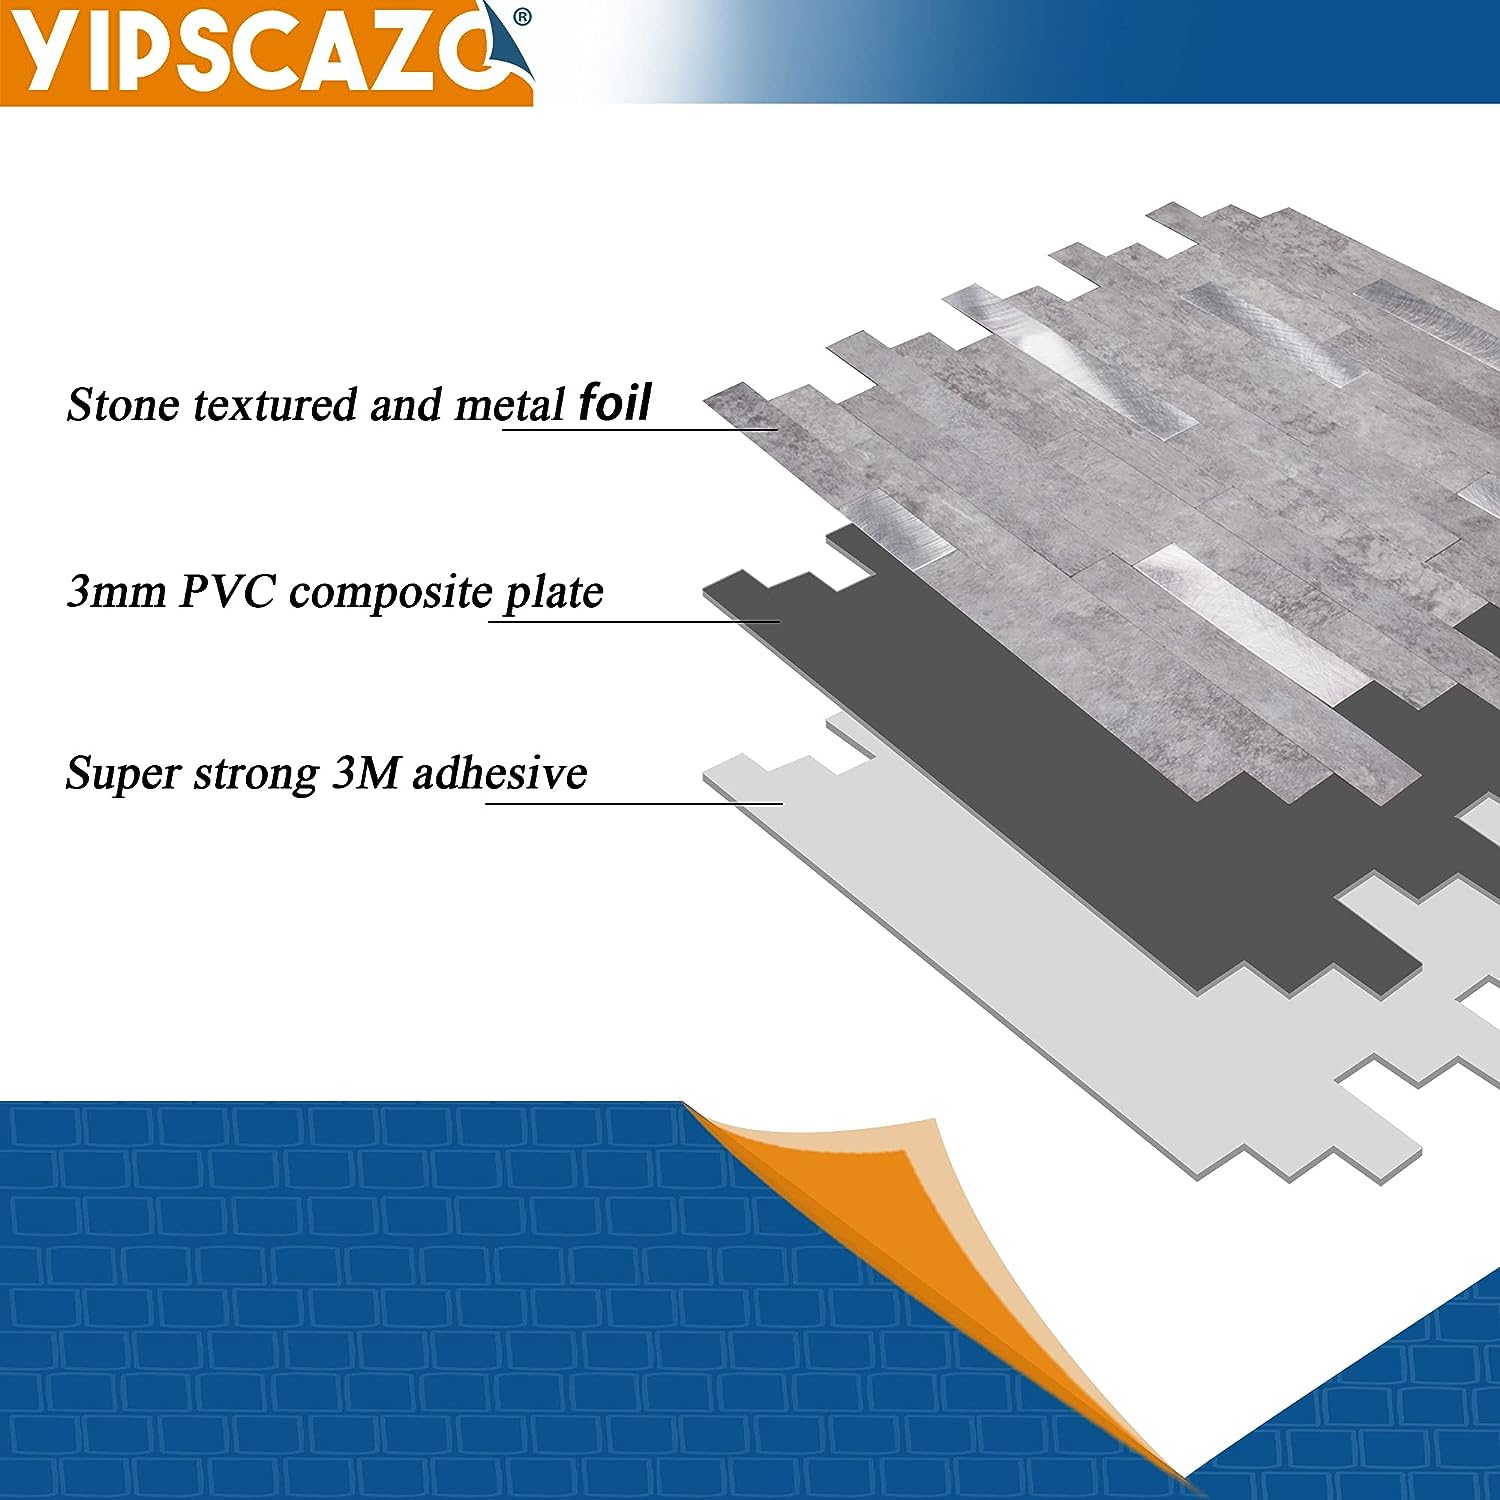 PVC kitchen backsplash tile composite image Linear Blend in Gray